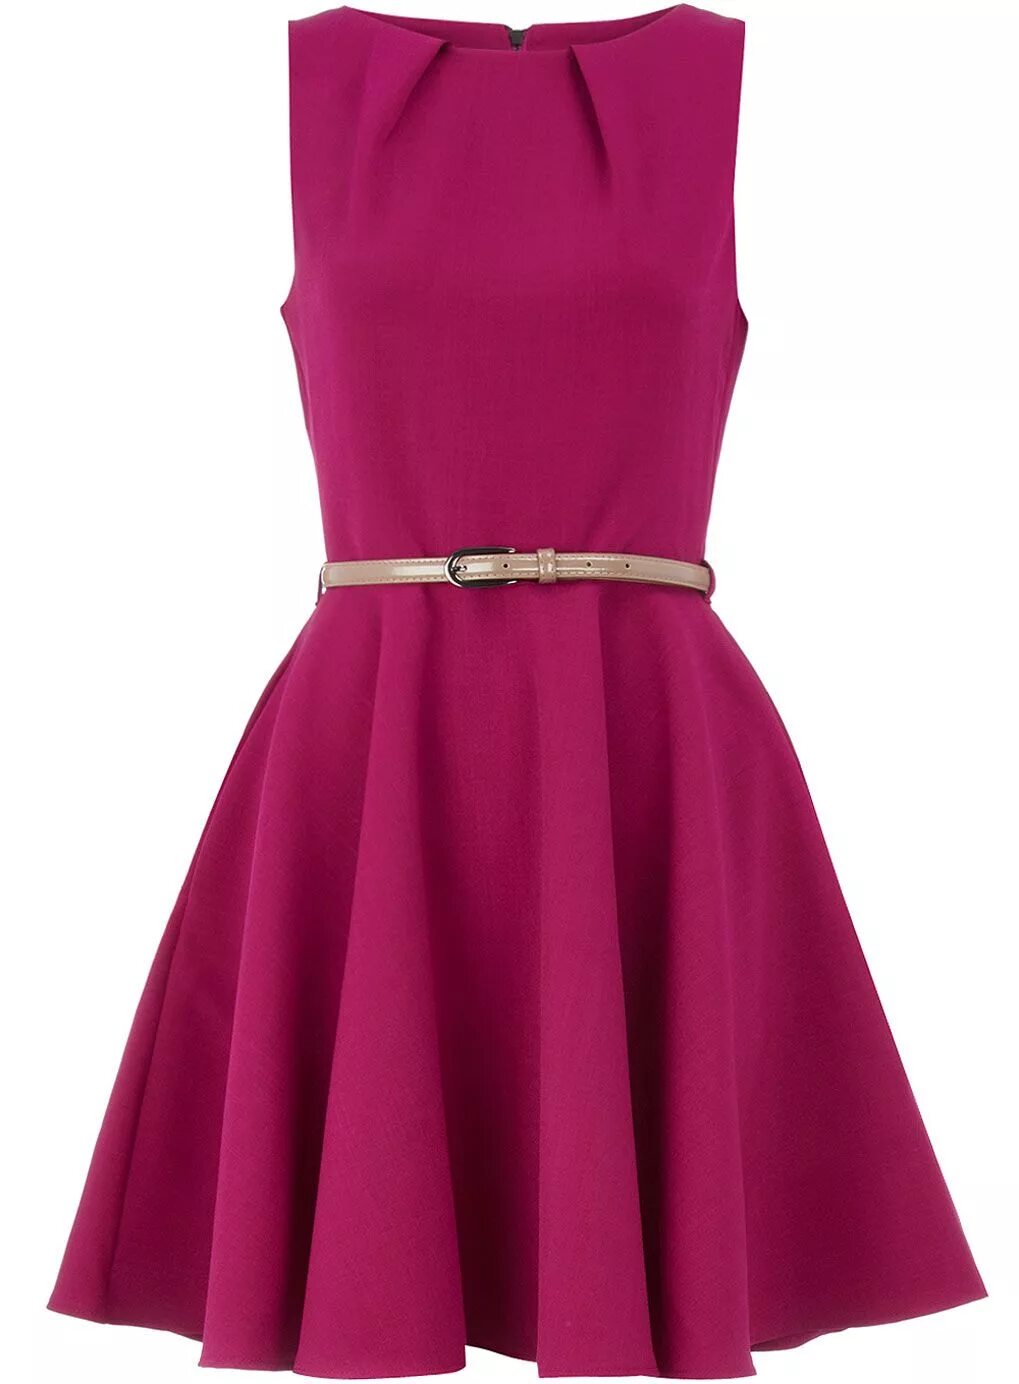 Платье Dorothy Perkins с поясом. Розовое платье с поясом. Розовое платье с ремешком. Платье цвета яблока. Платья поясом розовые